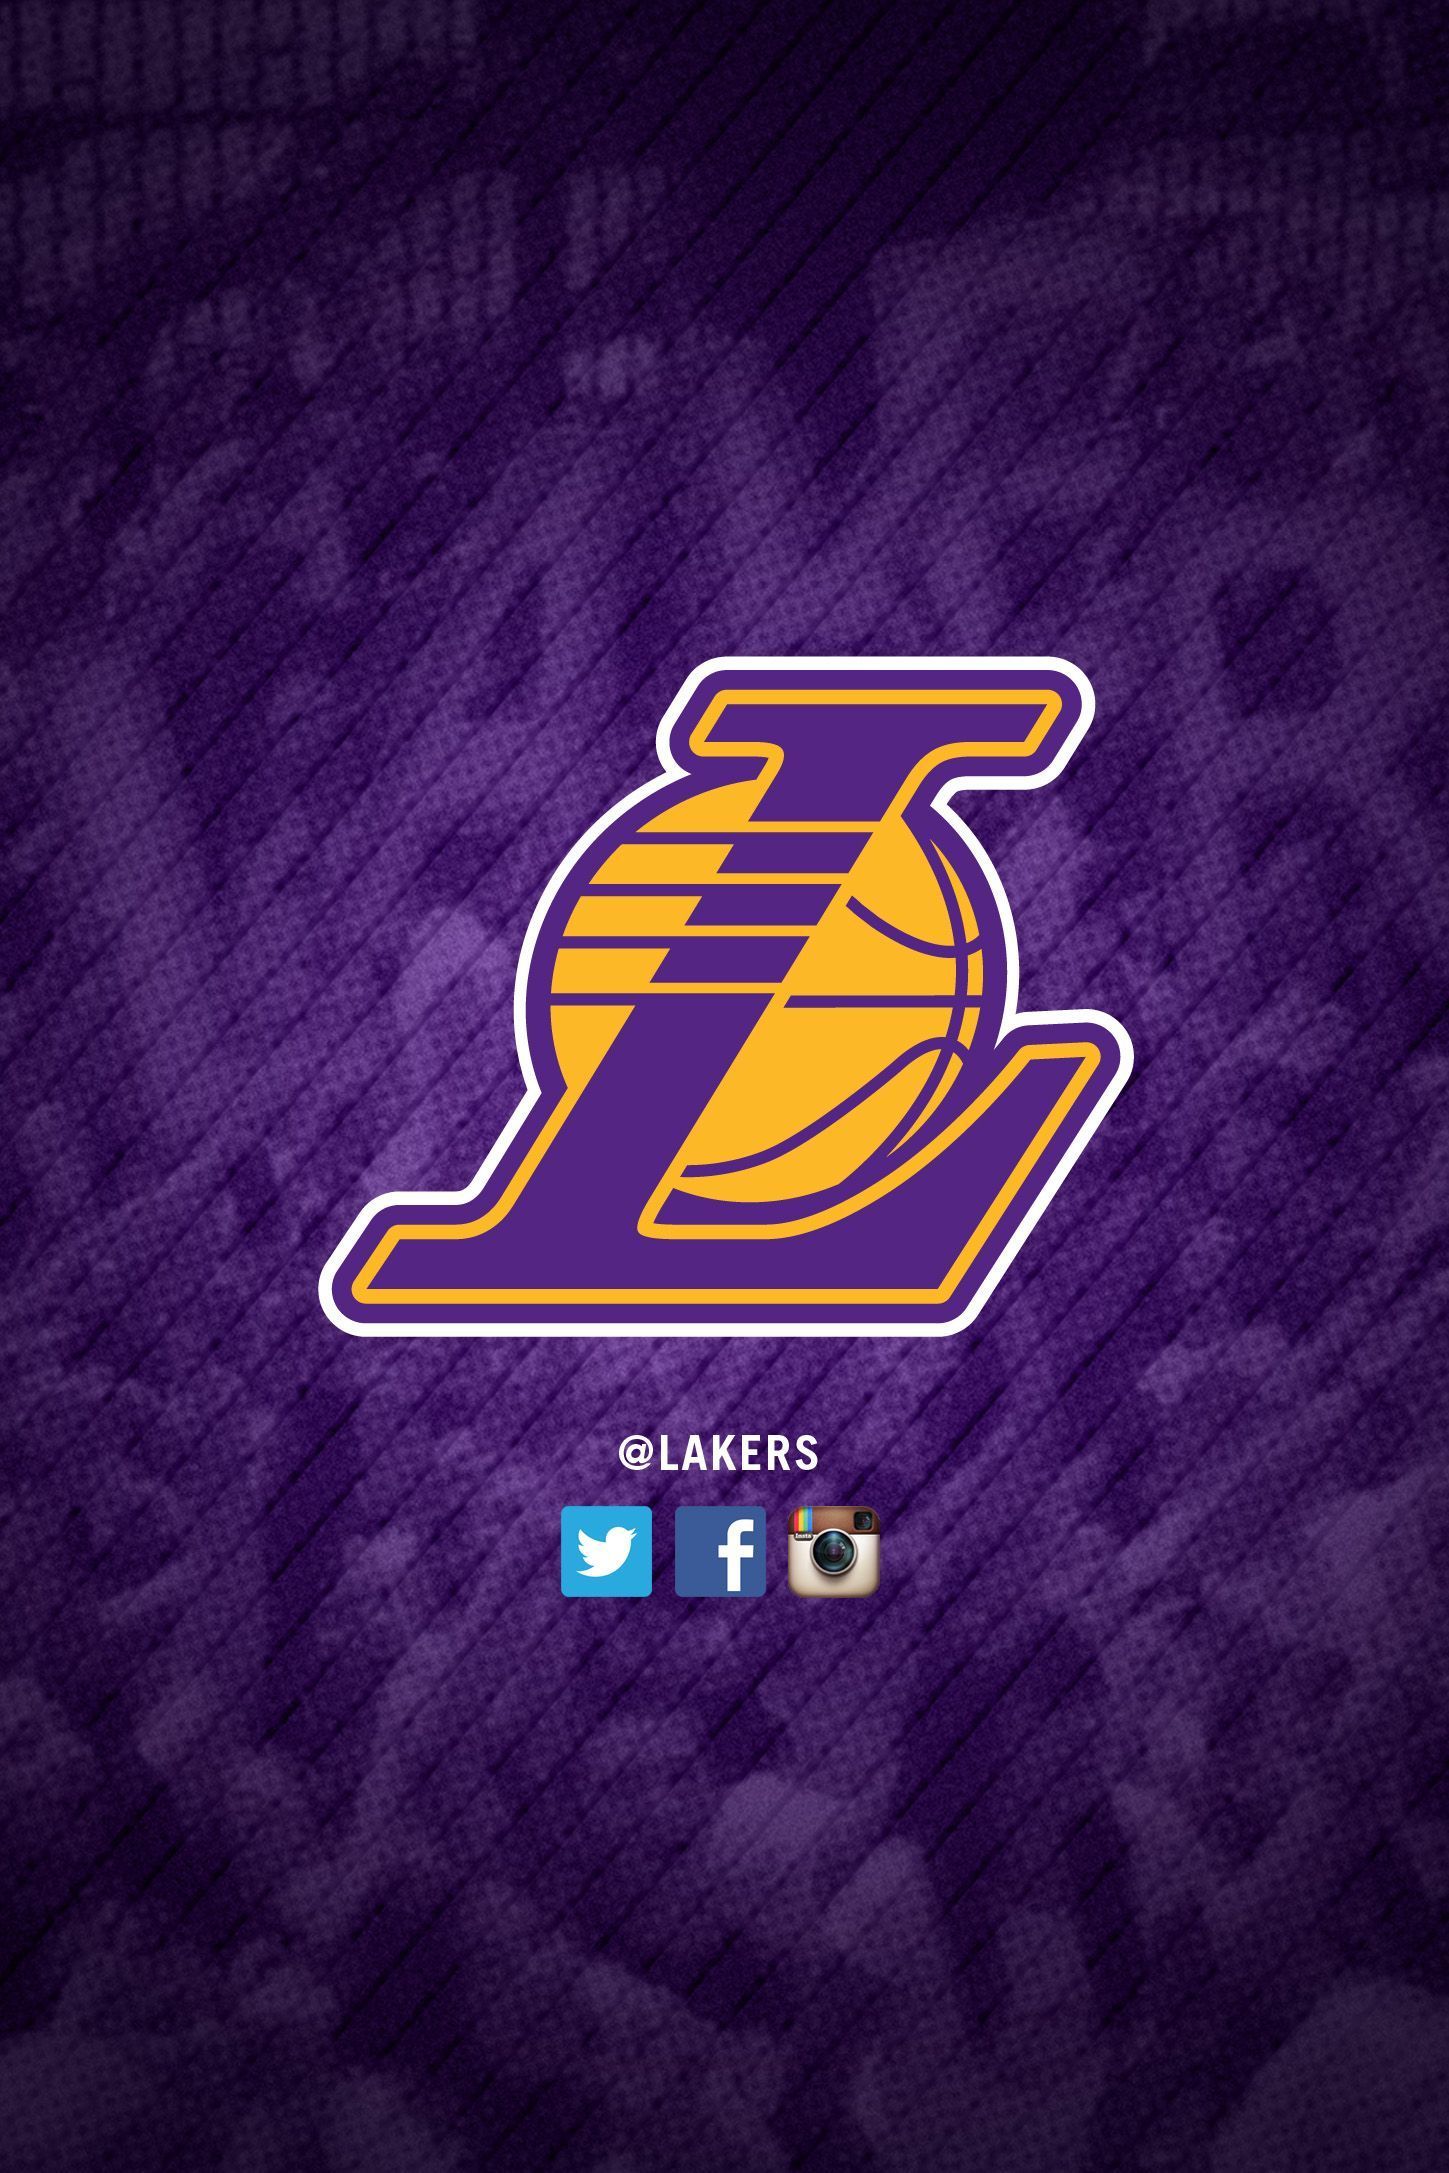 Lakers wallpaper iphone